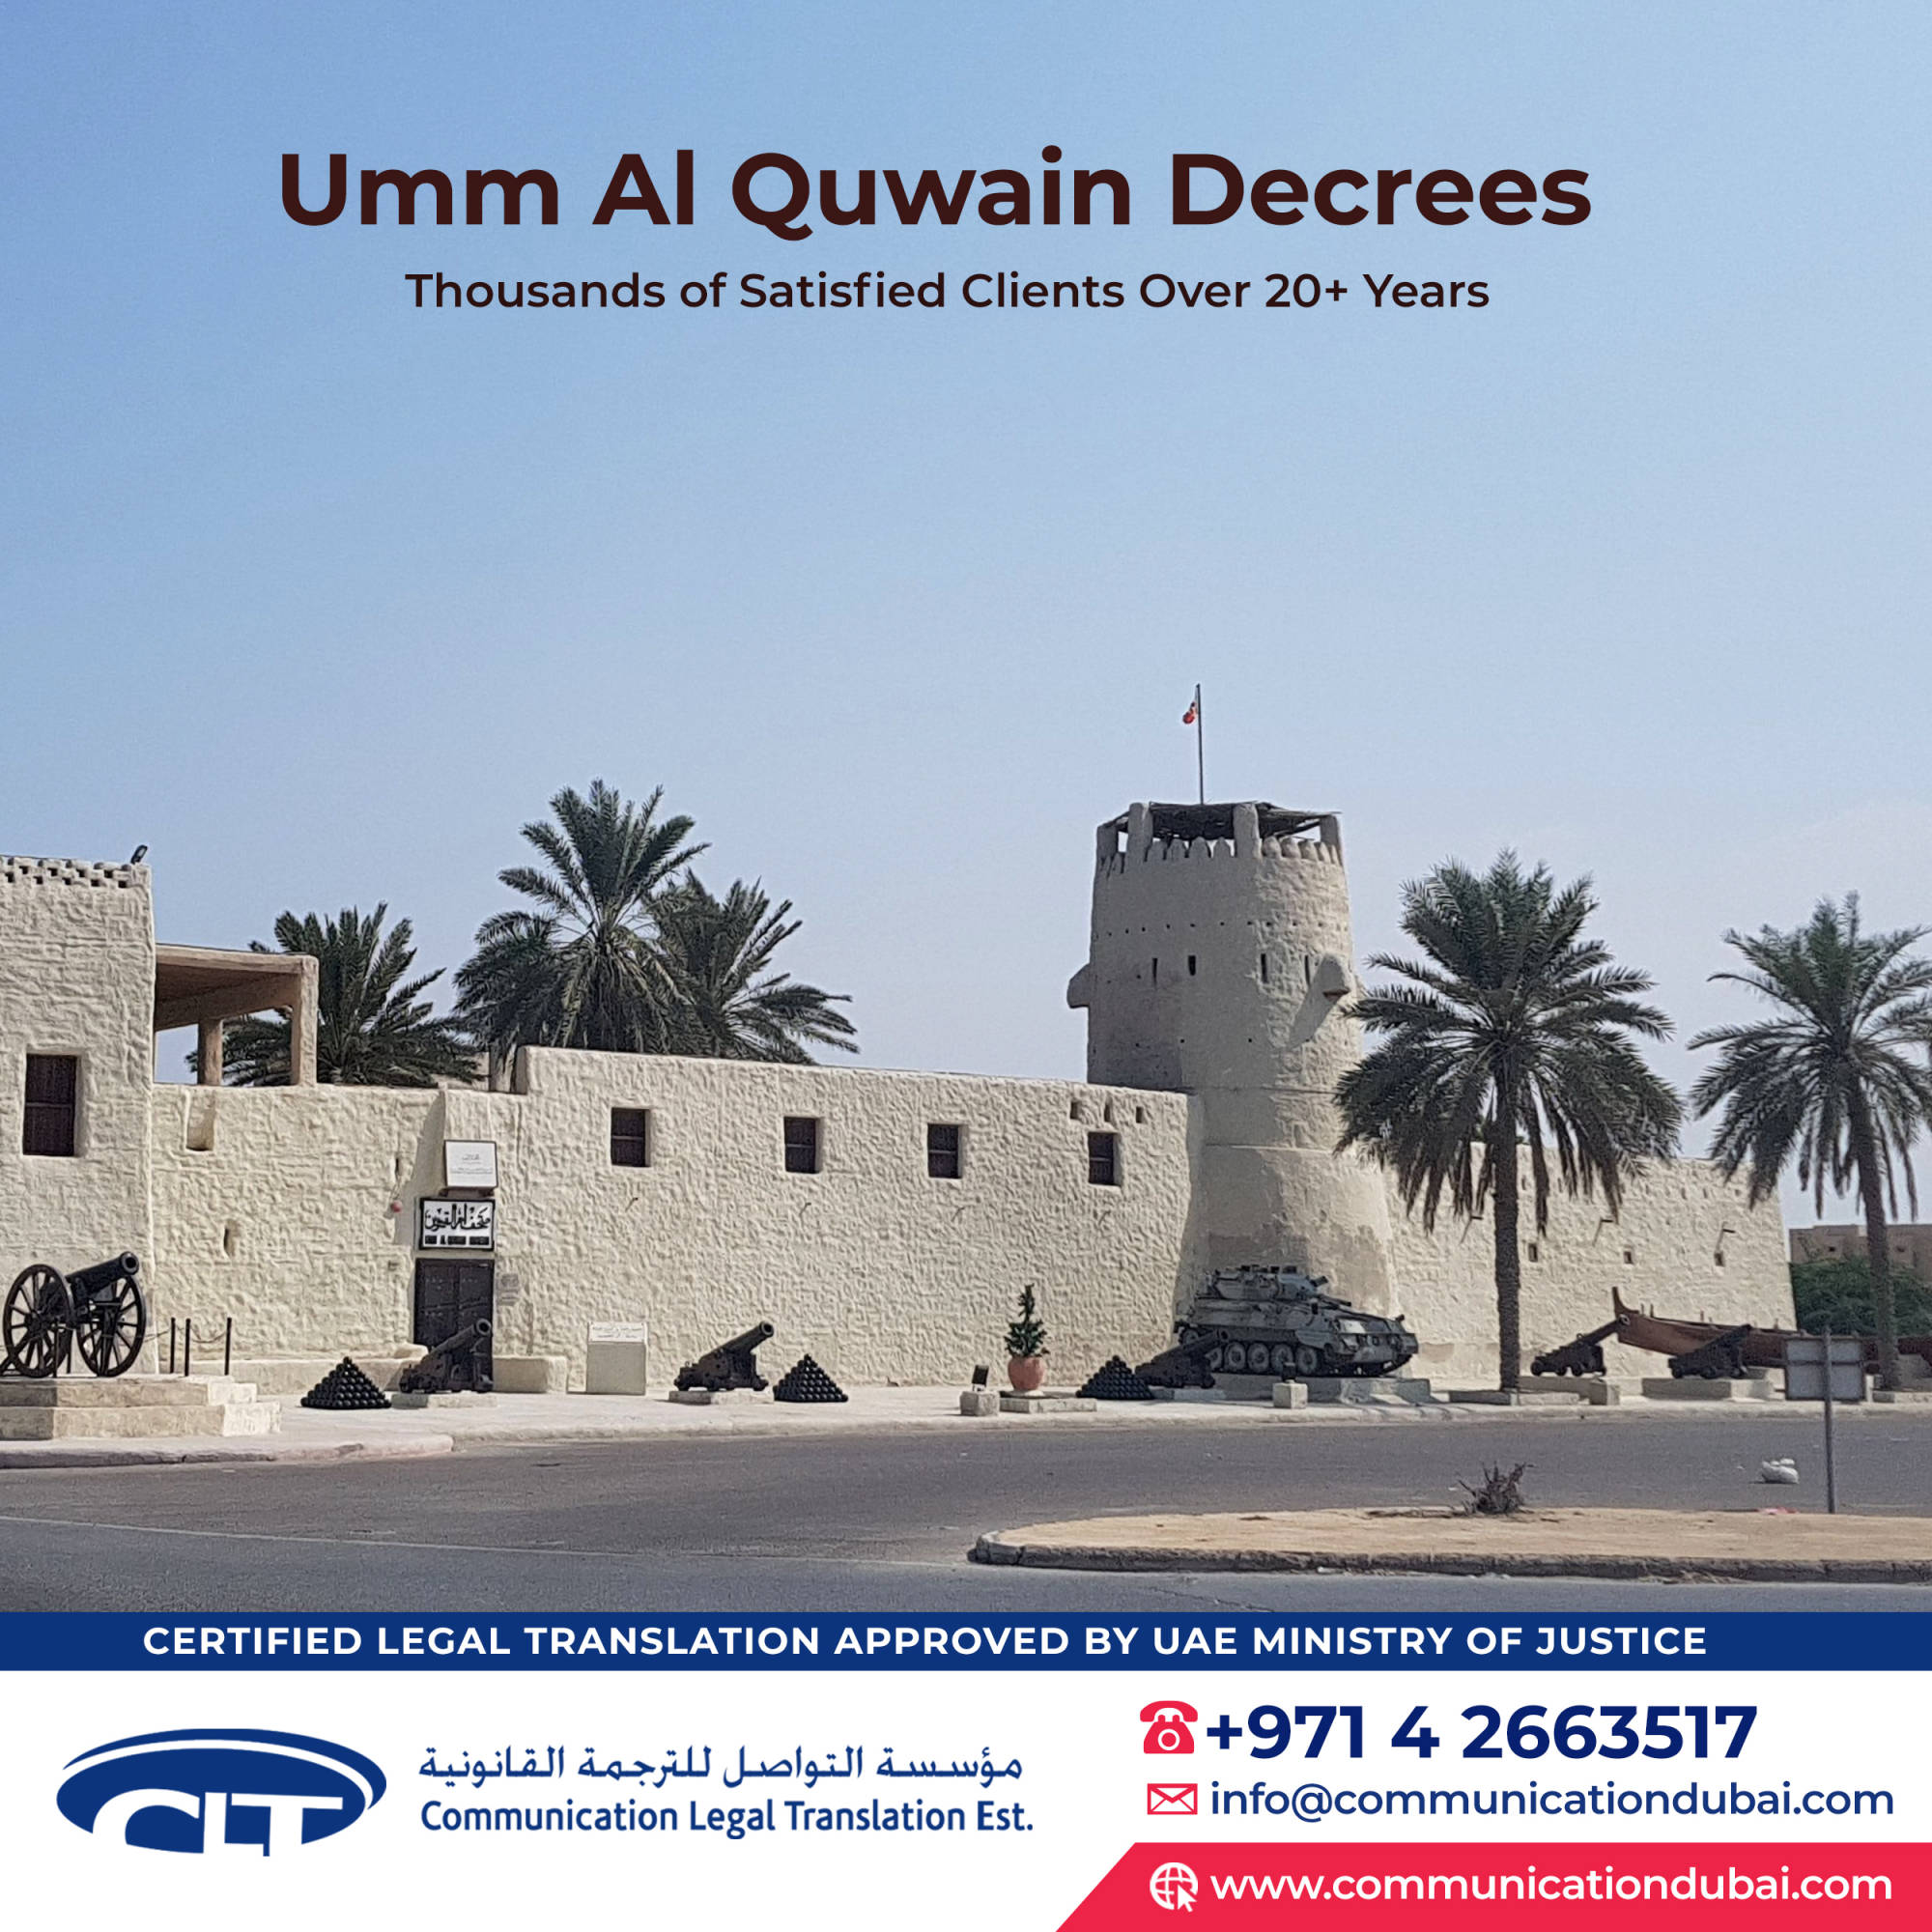 Umm Al Quwain Decrees 